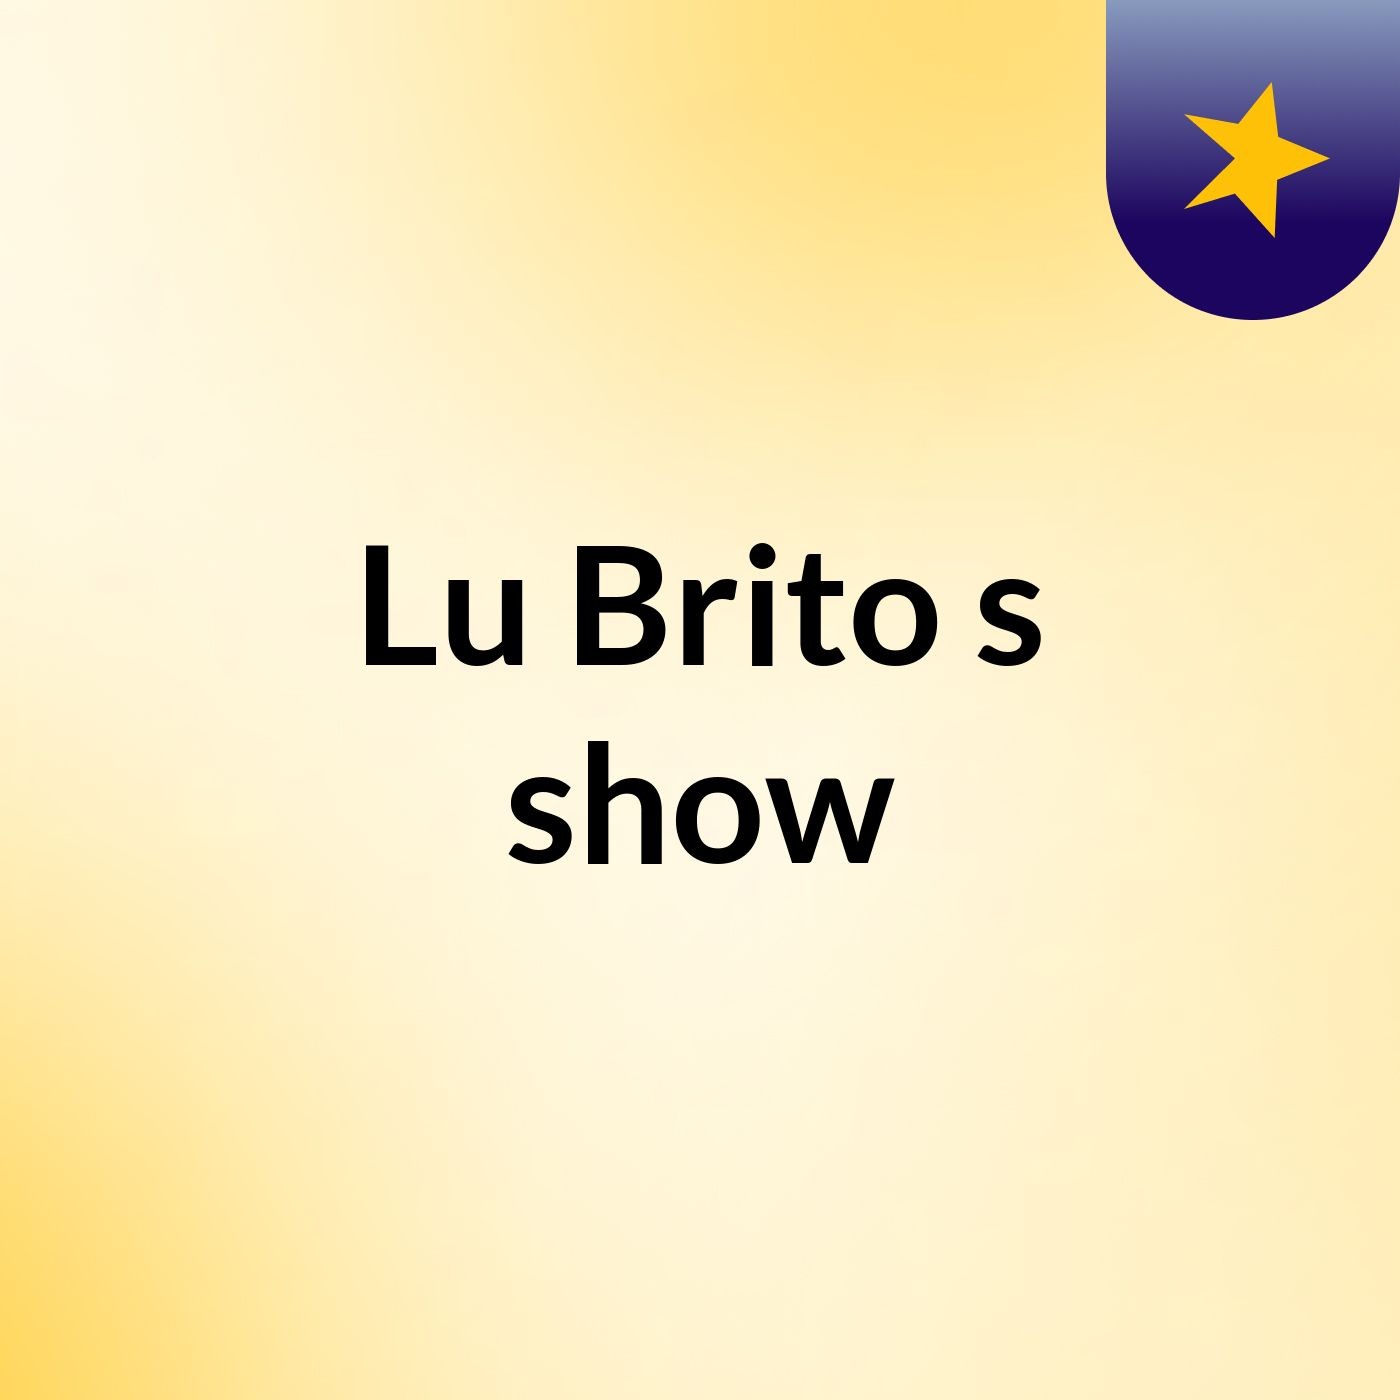 Lu Brito's show